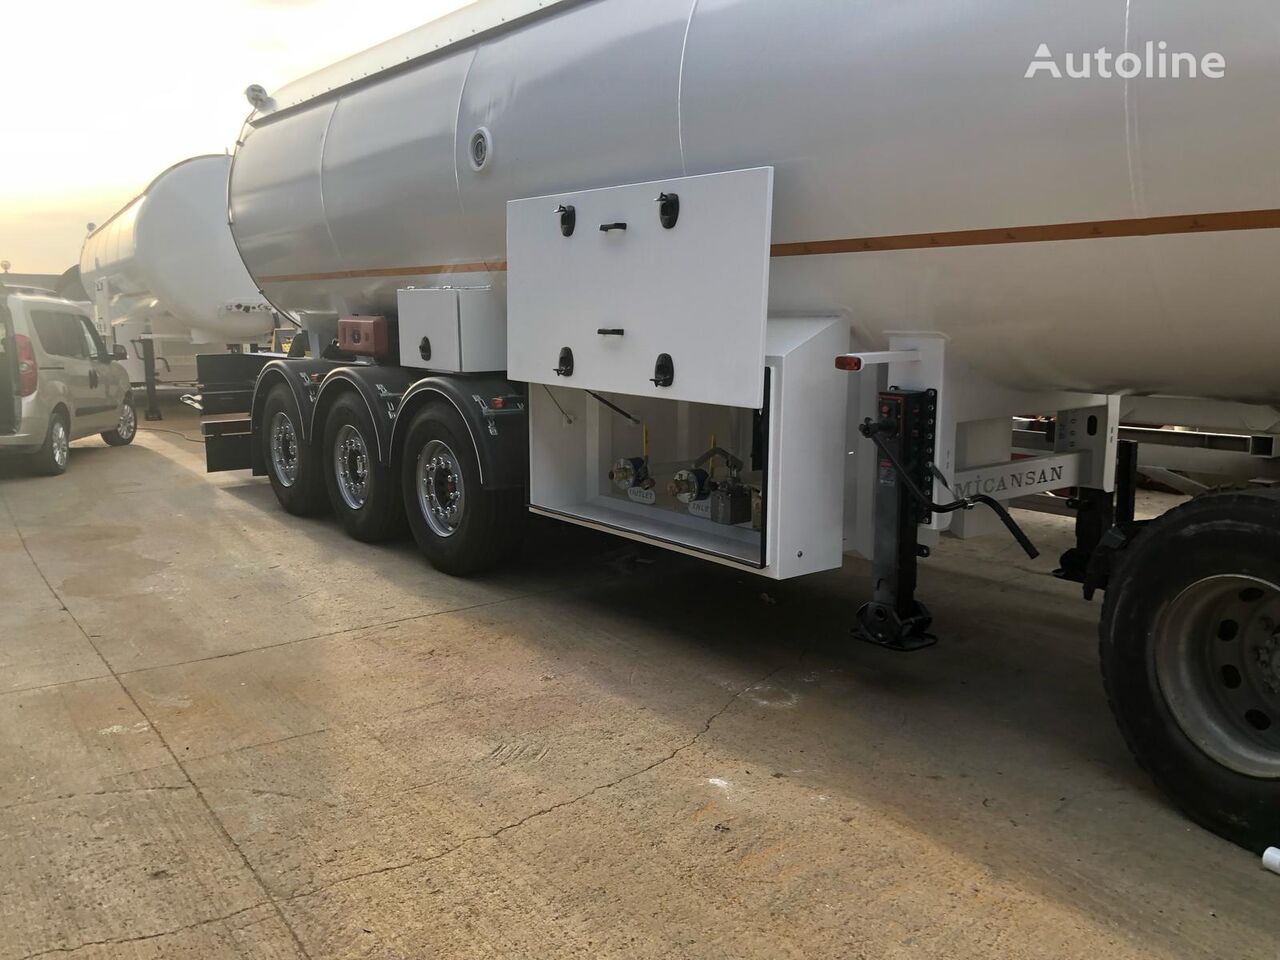 καινούρια δεξαμενή αερίου Micansan READY FOR SHIPMENT 45 M3 LPG GAS TANKER SEMITRAIL